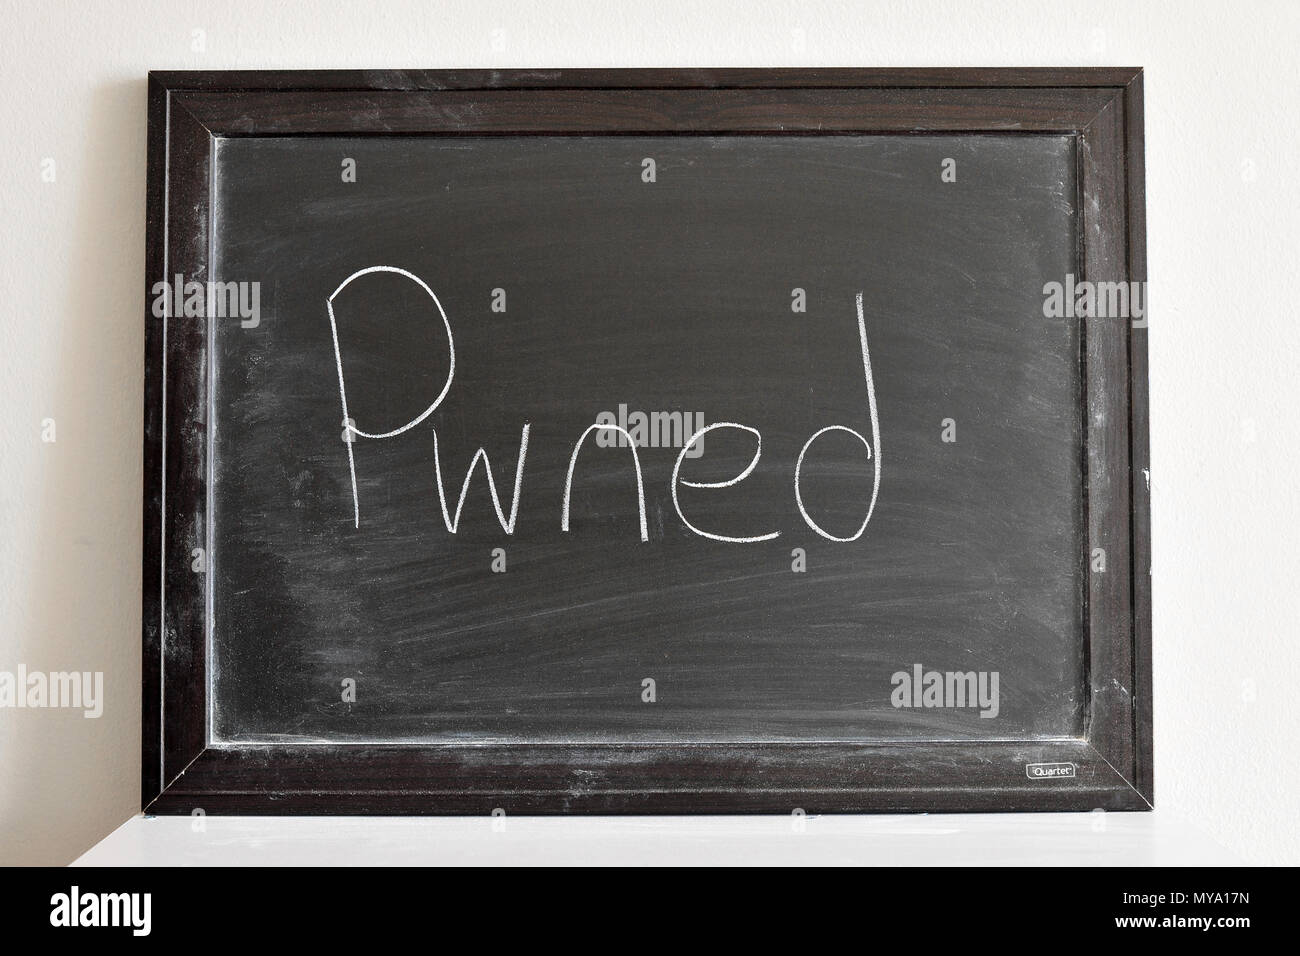 Pwned written in white chalk on a blackboard Stock Photo